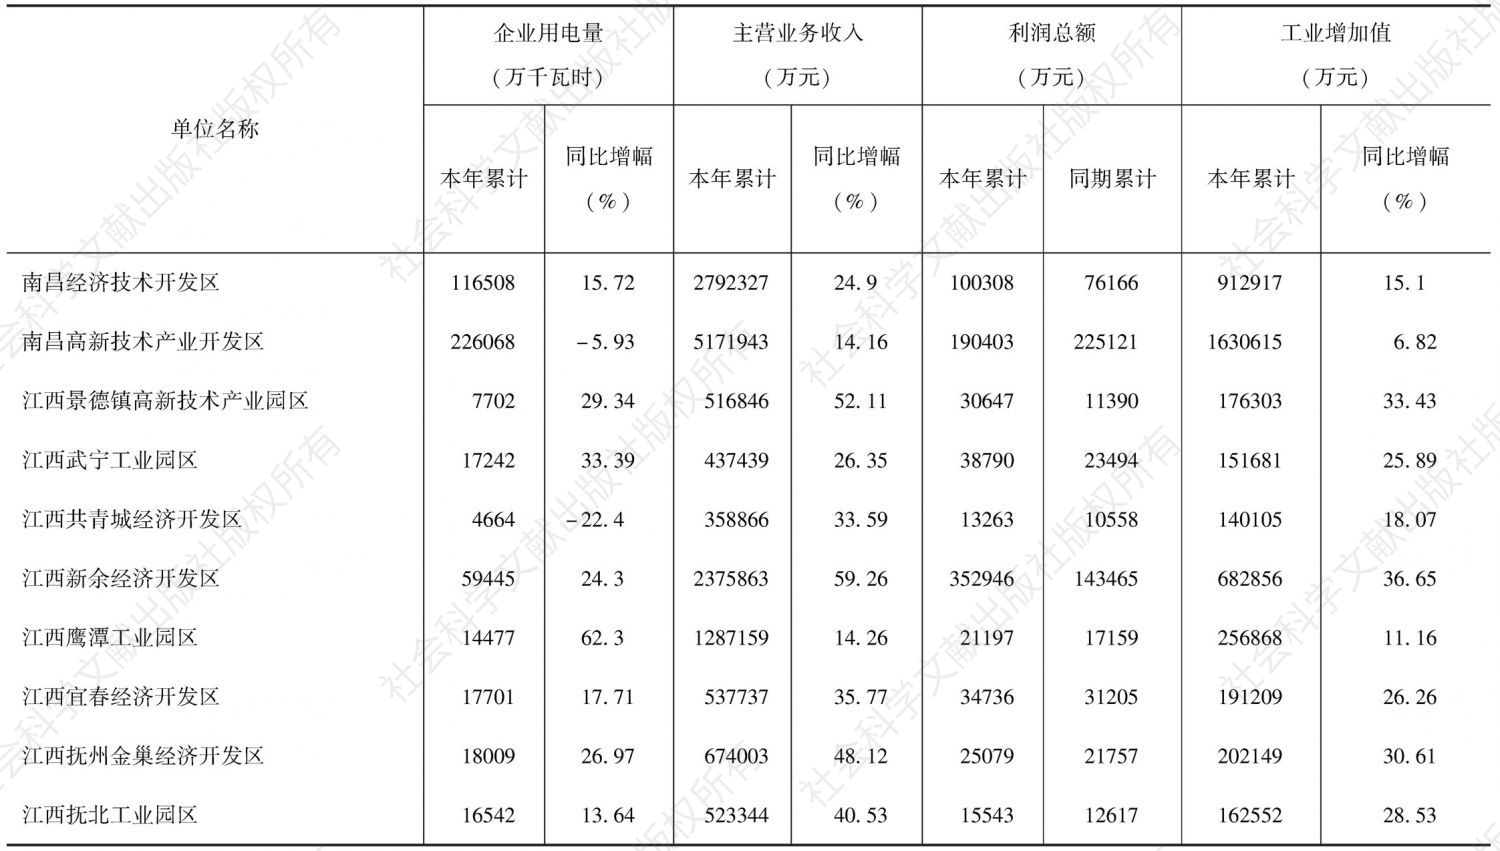 表10-6 鄱阳湖生态经济区生态工业园的2008年12月产值情况（缺少九江出口加工区数据）